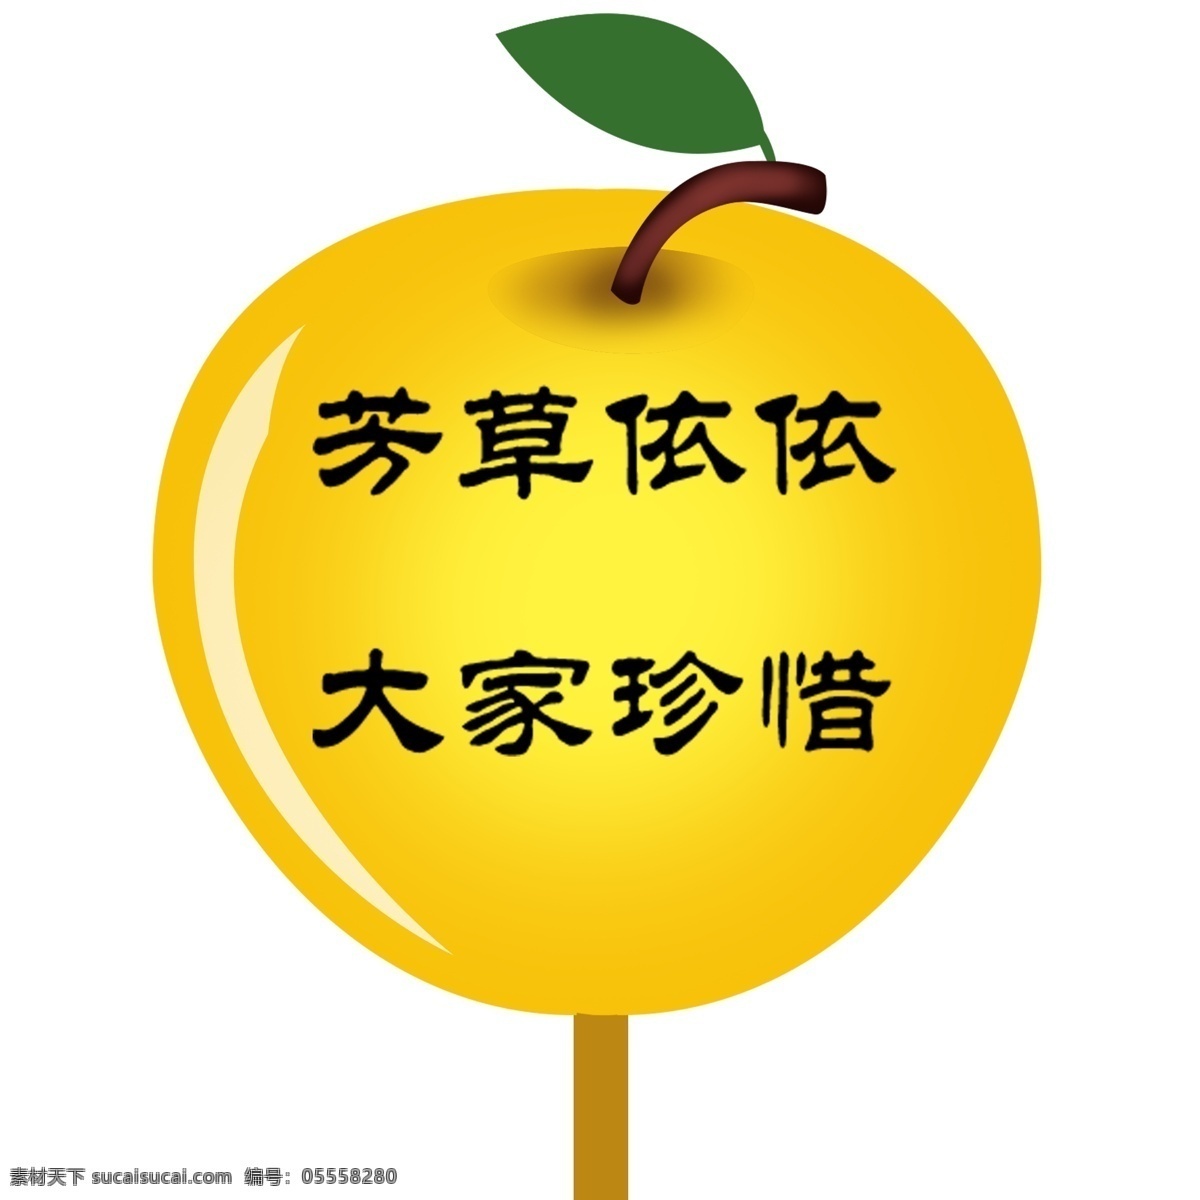 苹果 爱护 花草 标识 牌 透明 底 黄色 绿色 警示牌 卡通 简笔 白色 标牌 环保 爱护花草 环境保护